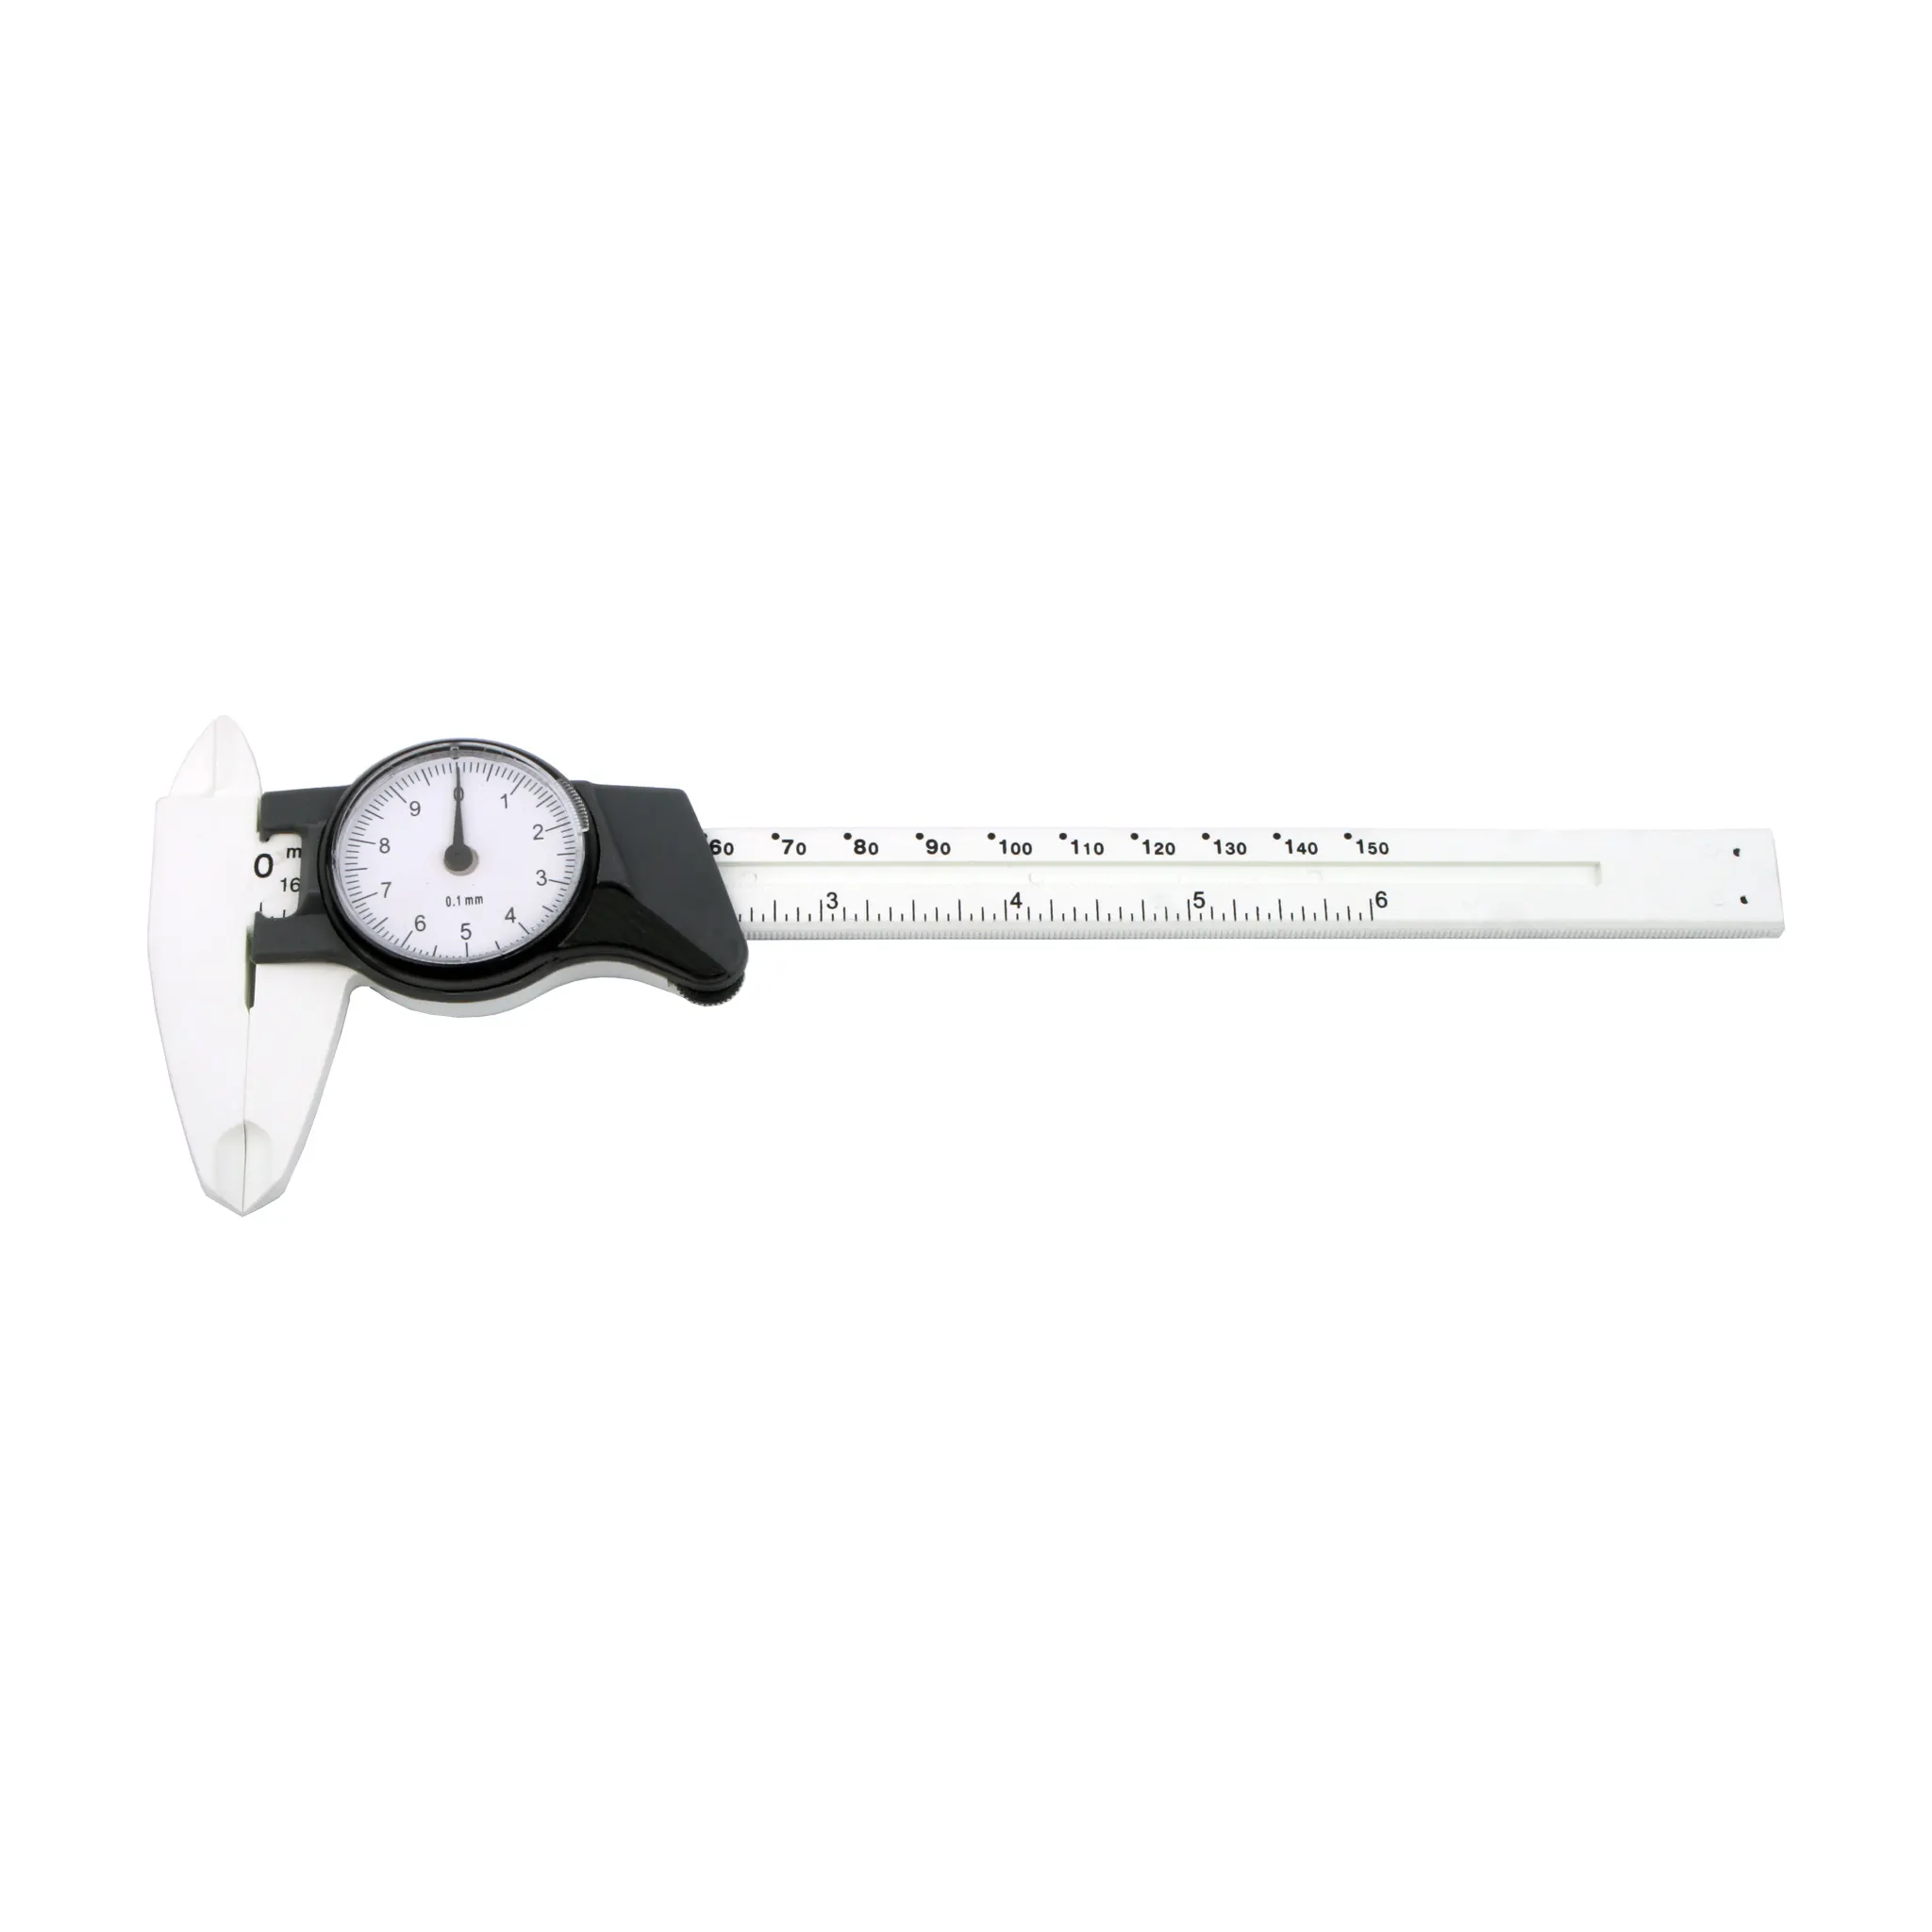 GemTrue-Regla de Dial Vernier, calibrador con indicador de Dial, herramientas de medición, Micrómetro de 150mm, 0,02mm, DK59003-P de calibre de plástico